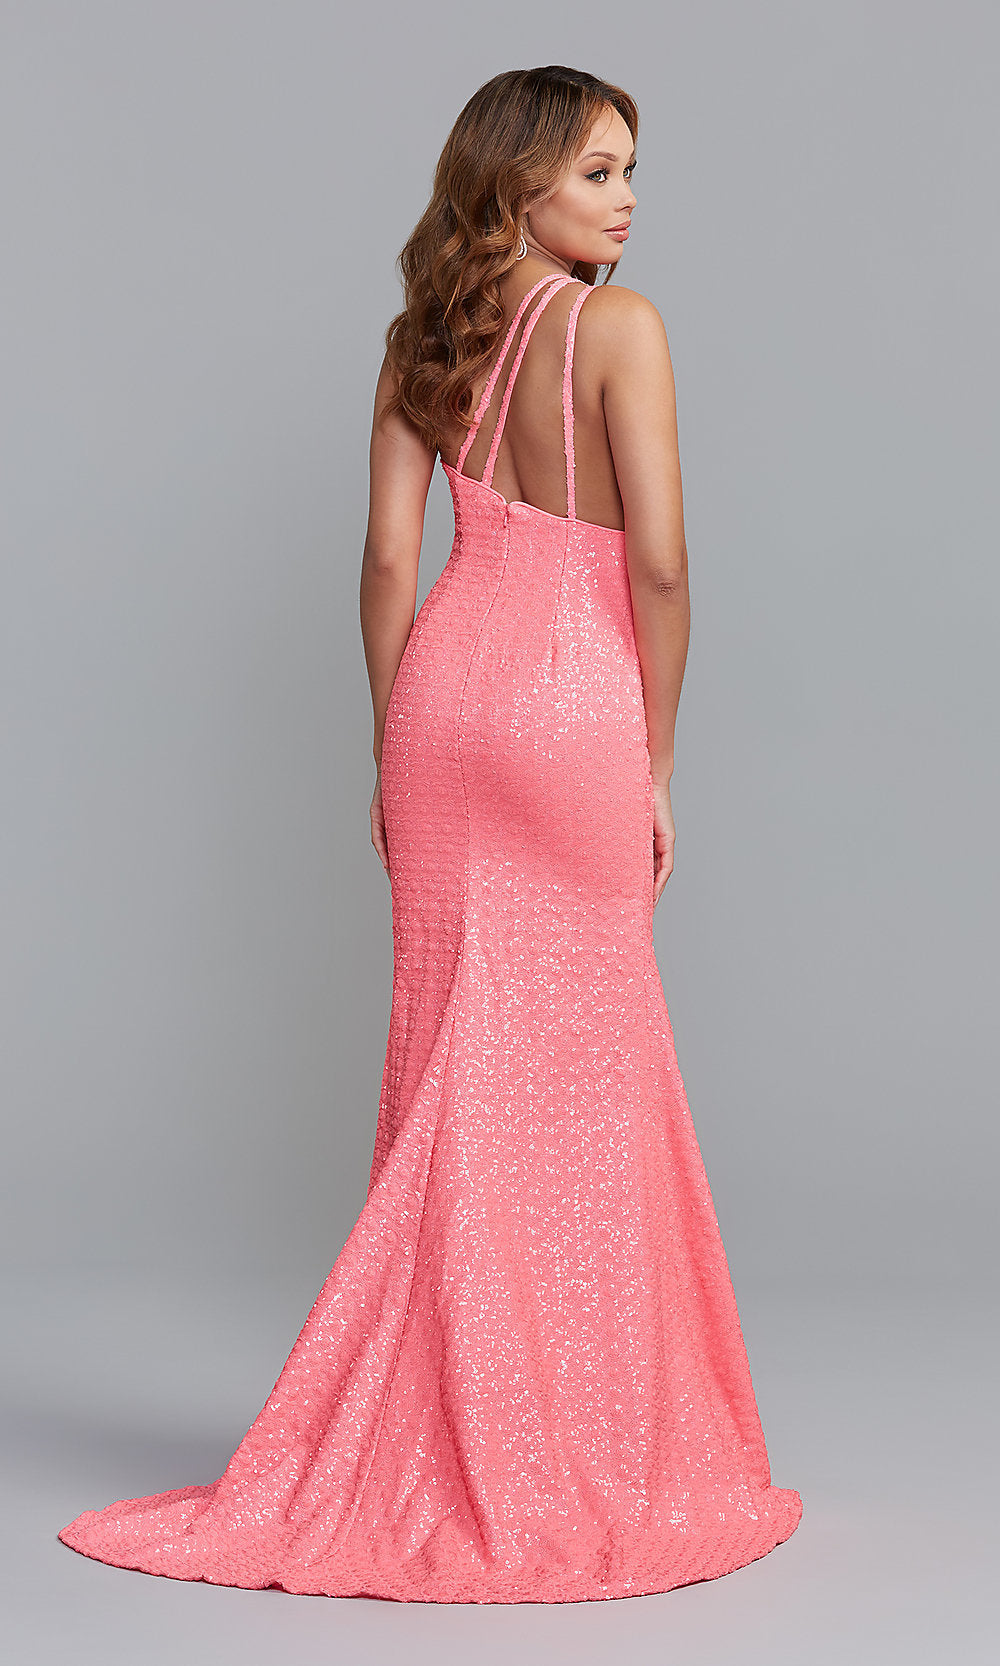  One-Shoulder Long Pink Formal Dress with Godet